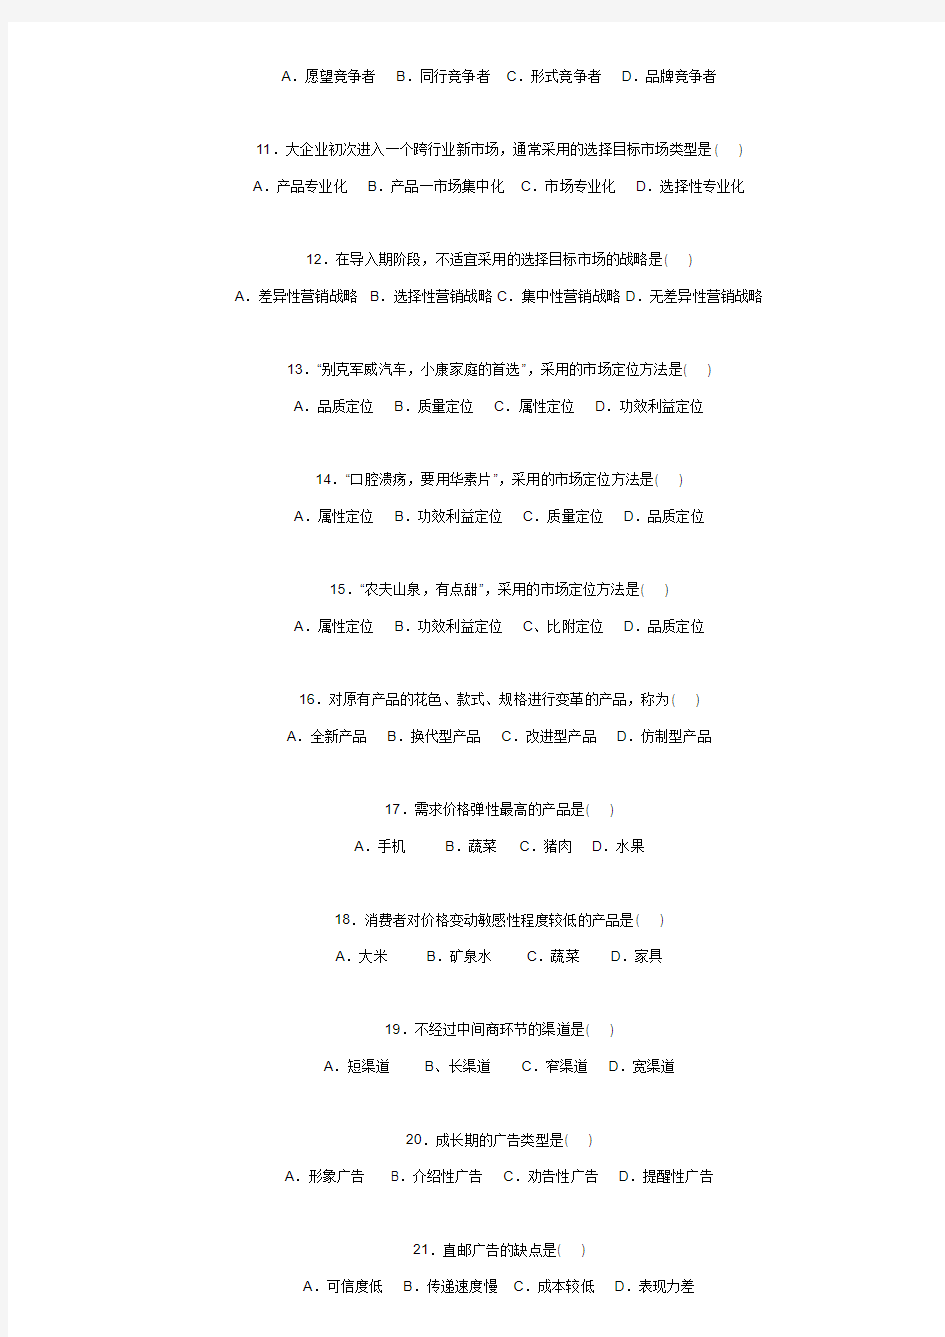 2009年4月江苏省高等教育自学考试27877市场营销真题试卷